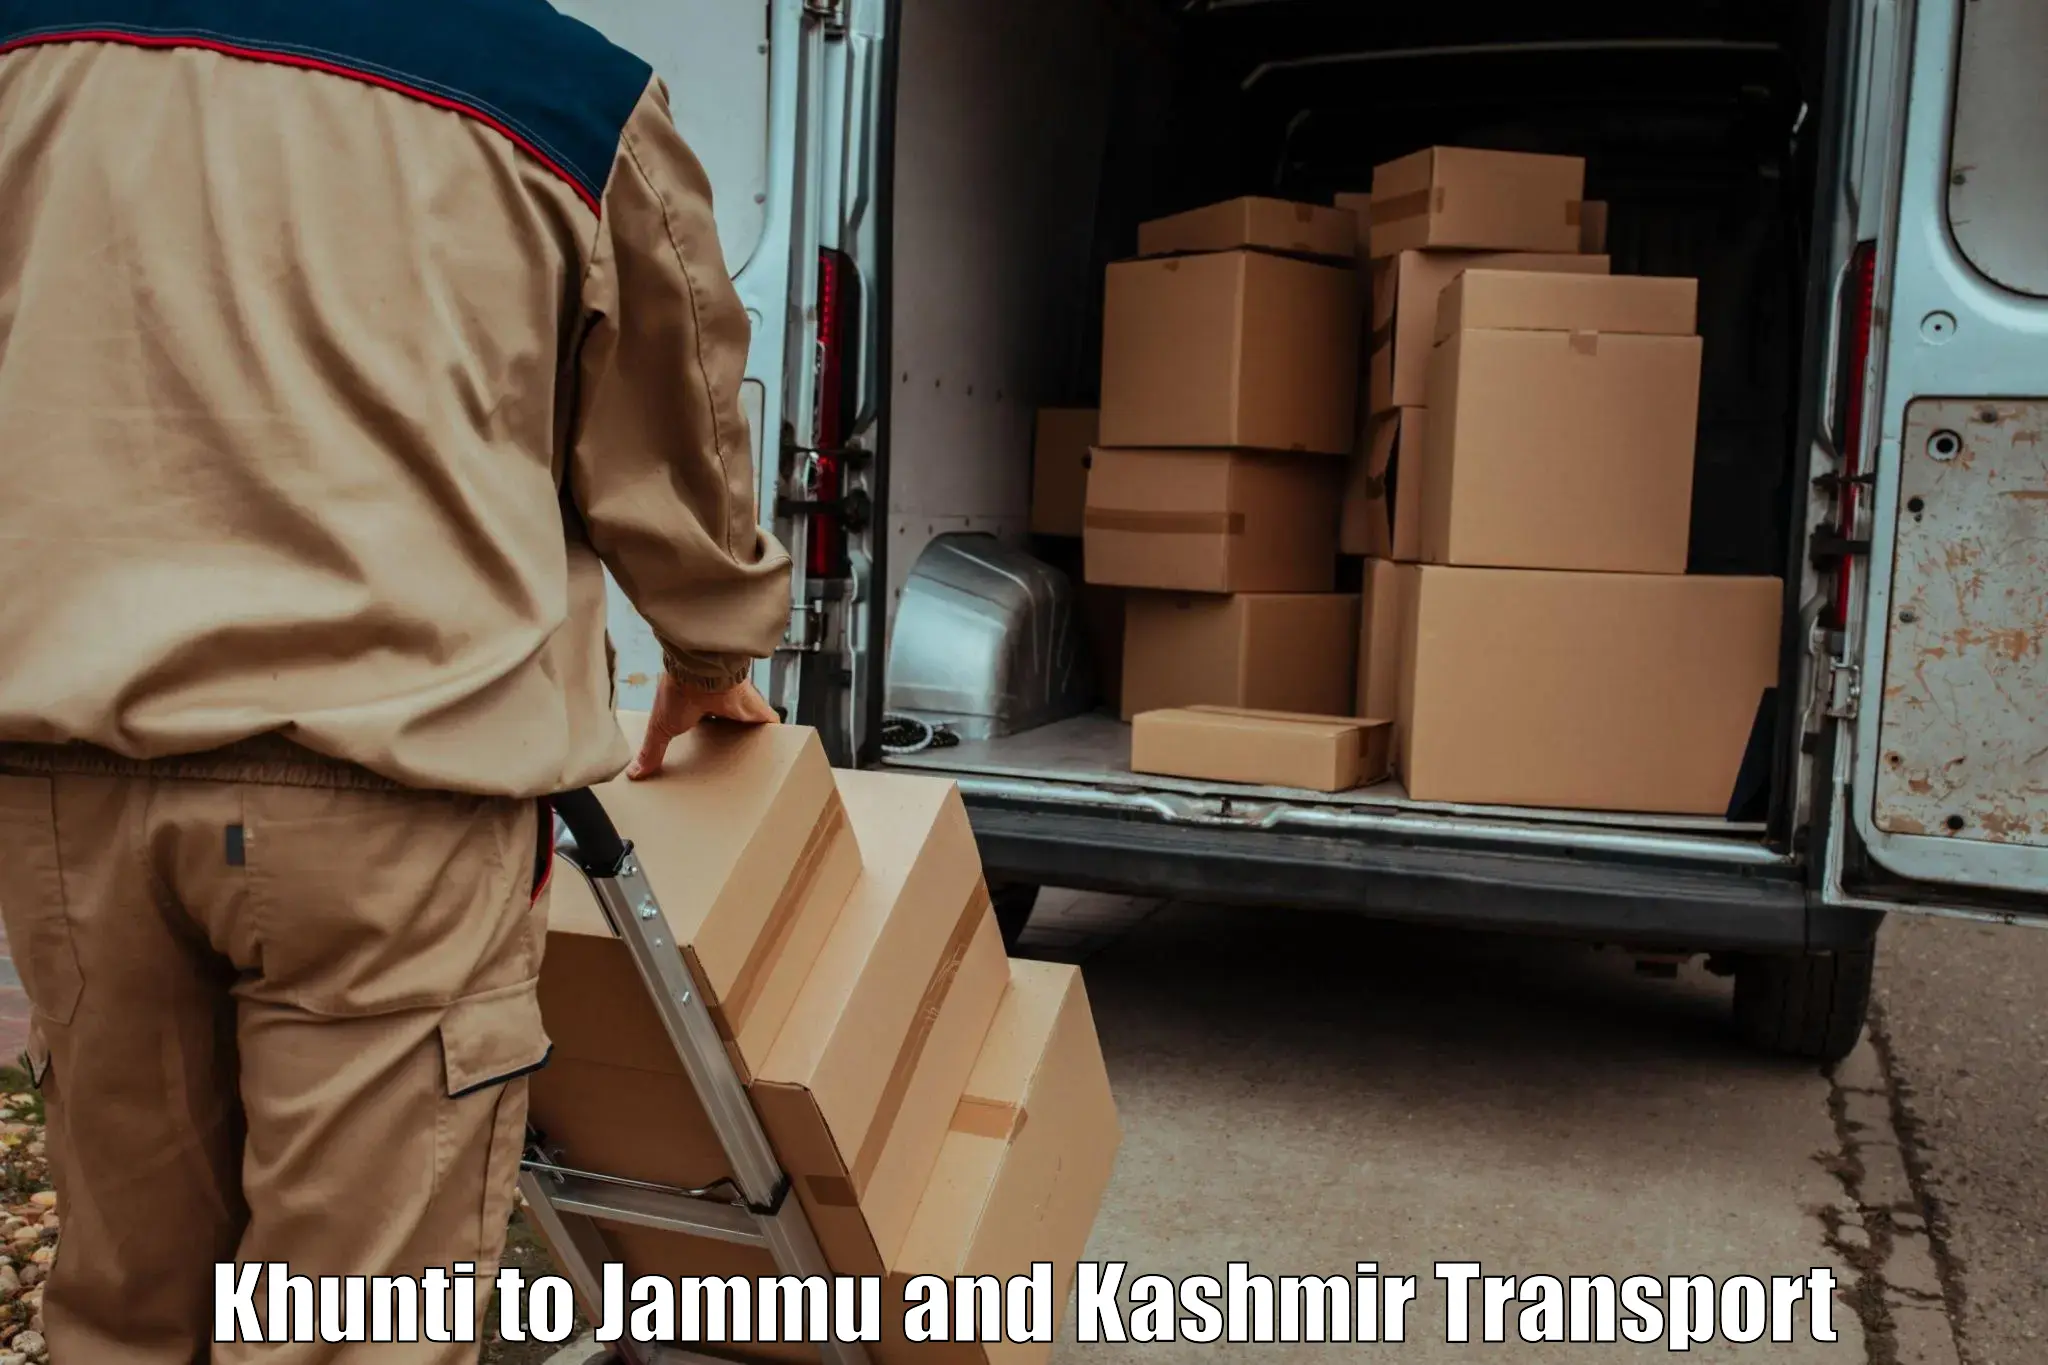 Bike shipping service Khunti to Srinagar Kashmir